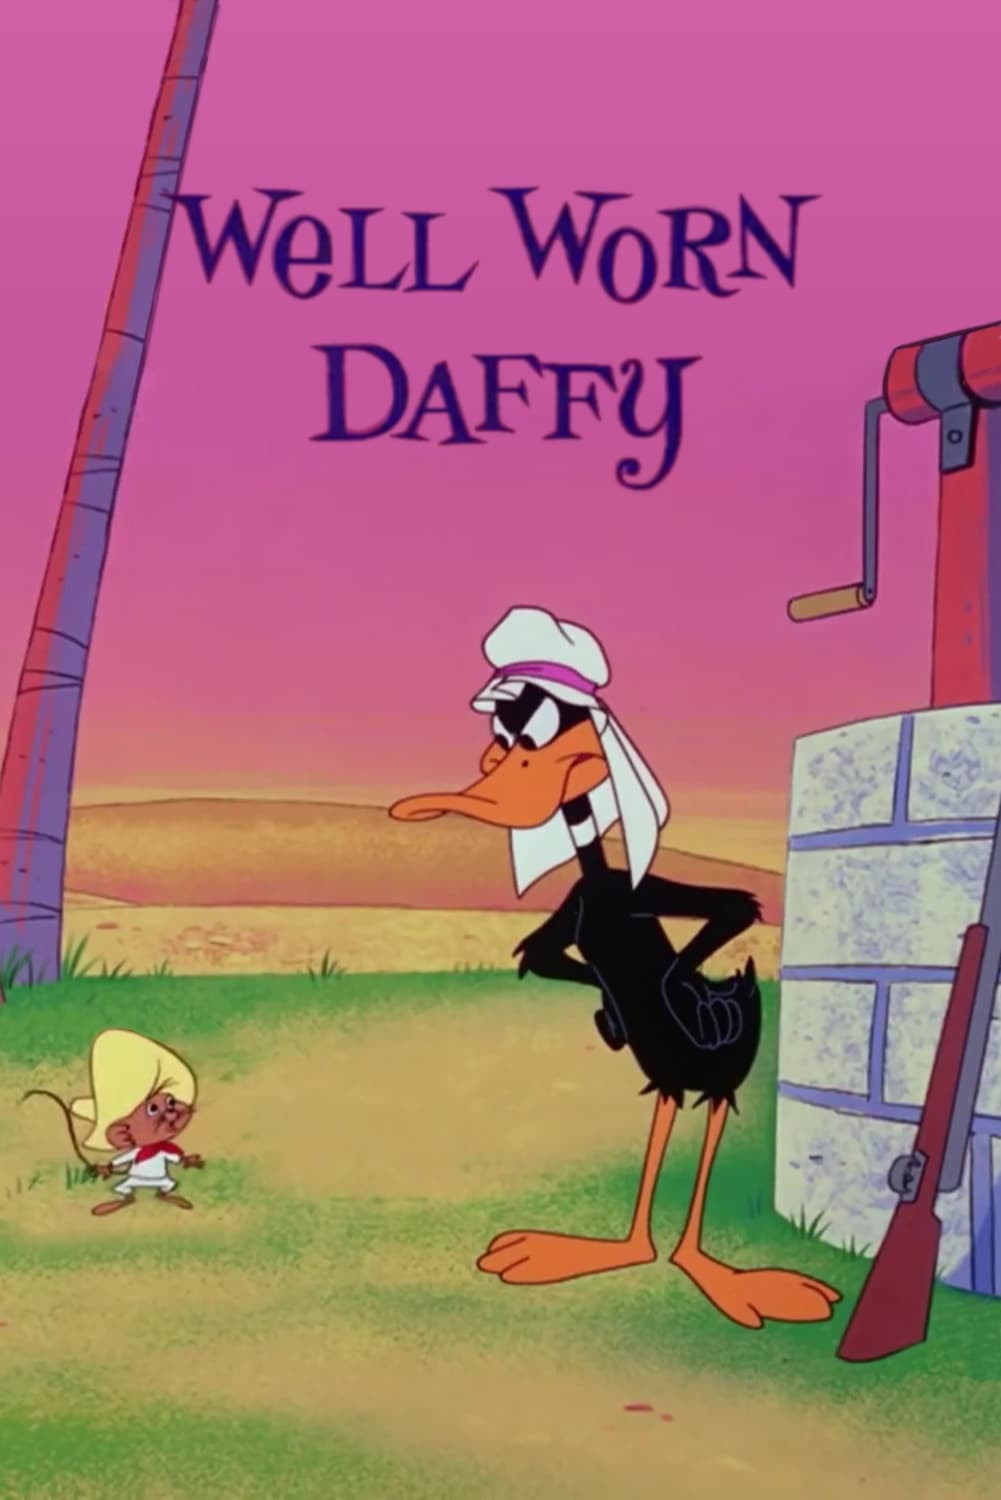 Well Worn Daffy (1965)